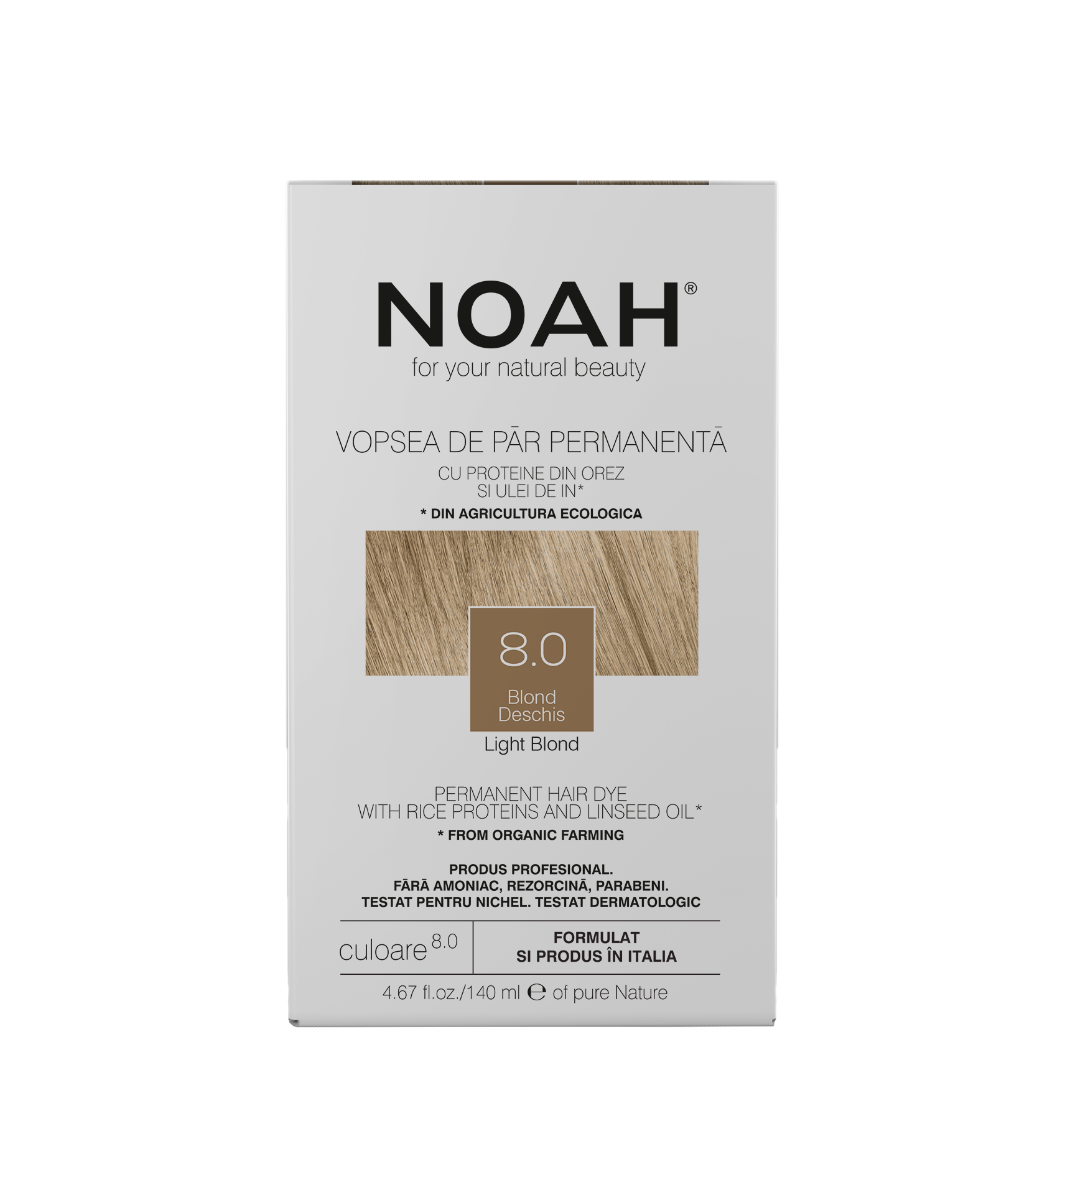 Vopsea de par naturala Blond deschis (8.0), 140ml, Noah